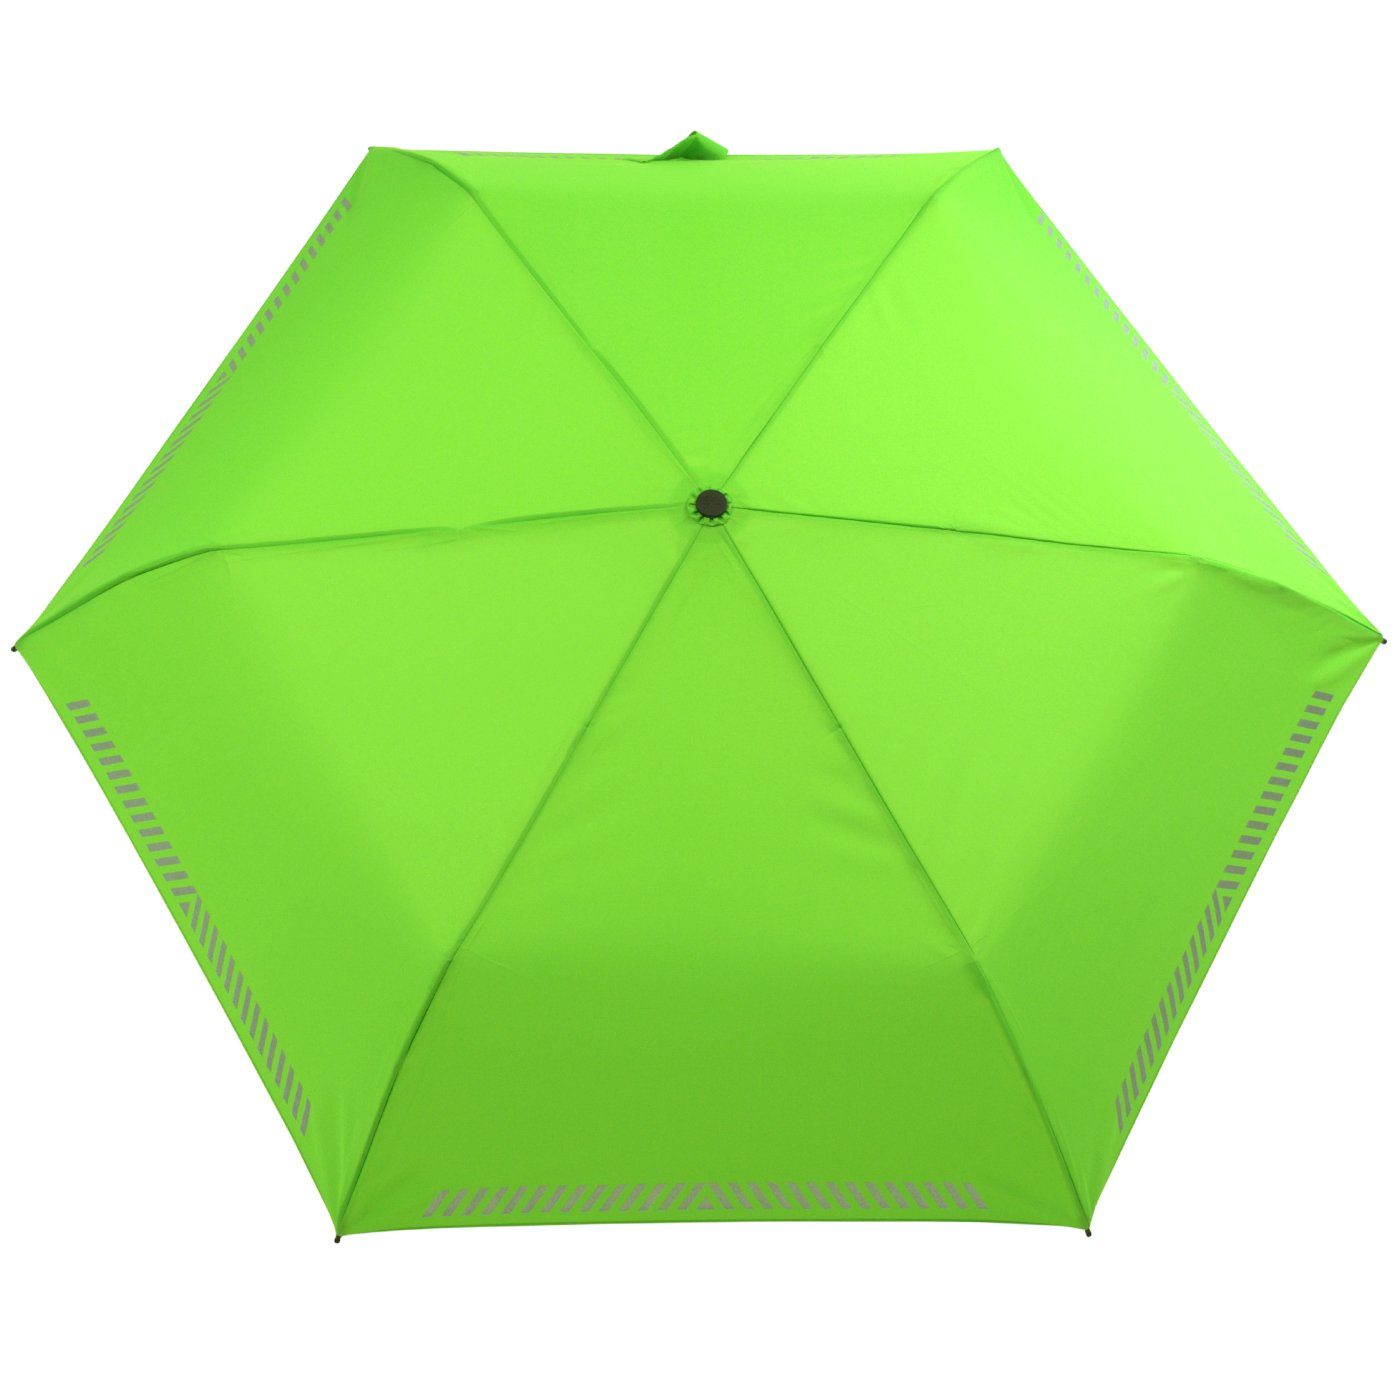 mit Kinderschirm - iX-brella grün Sicherheit reflektierend, durch neon Taschenregenschirm Reflex-Streifen Auf-Zu-Automatik,